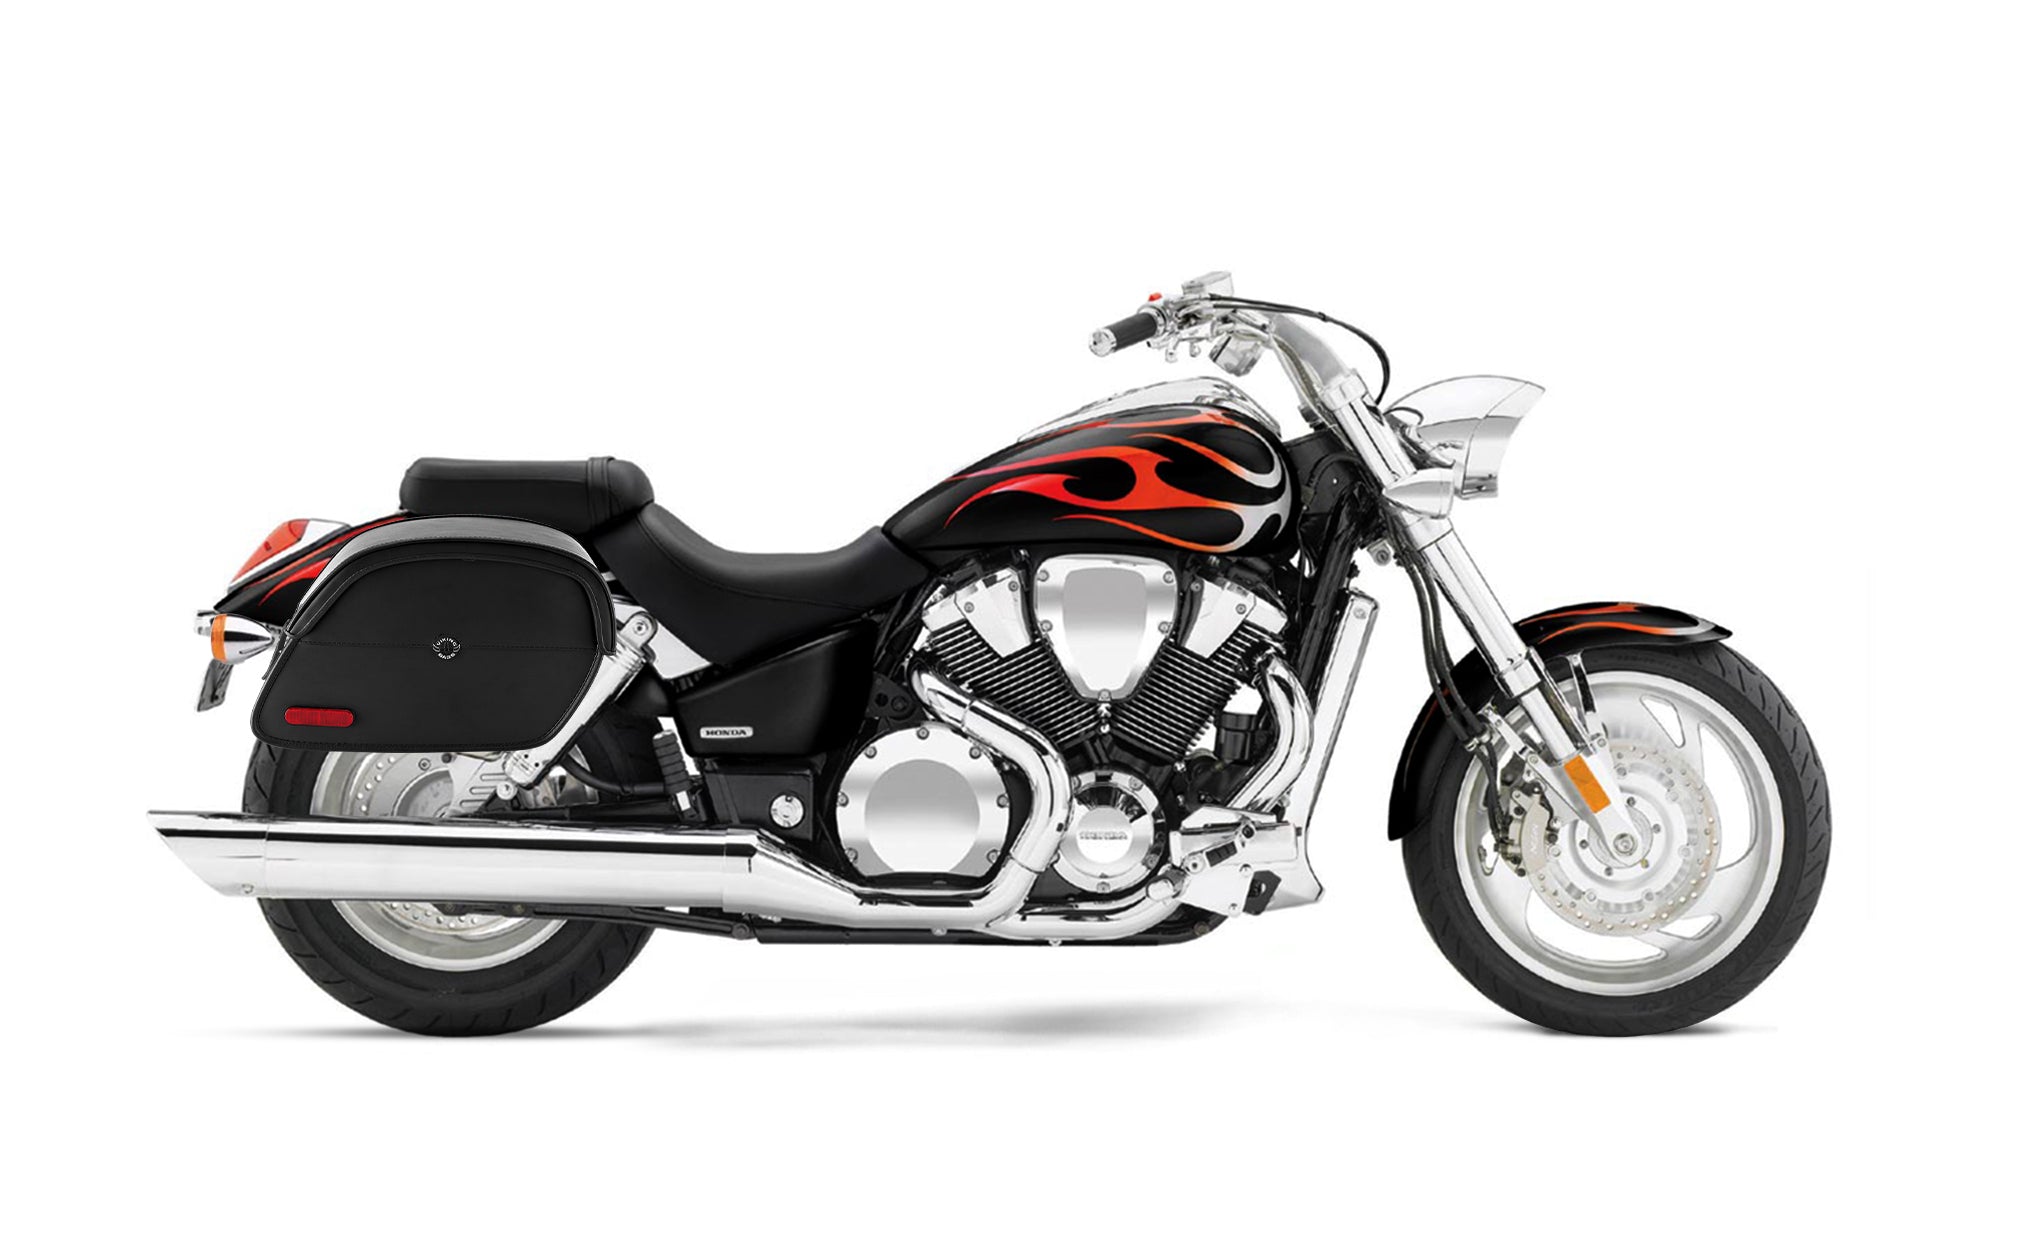 Viking California Large Honda Vtx 1800 C Leather Motorcycle Saddlebags on Bike Photo @expand